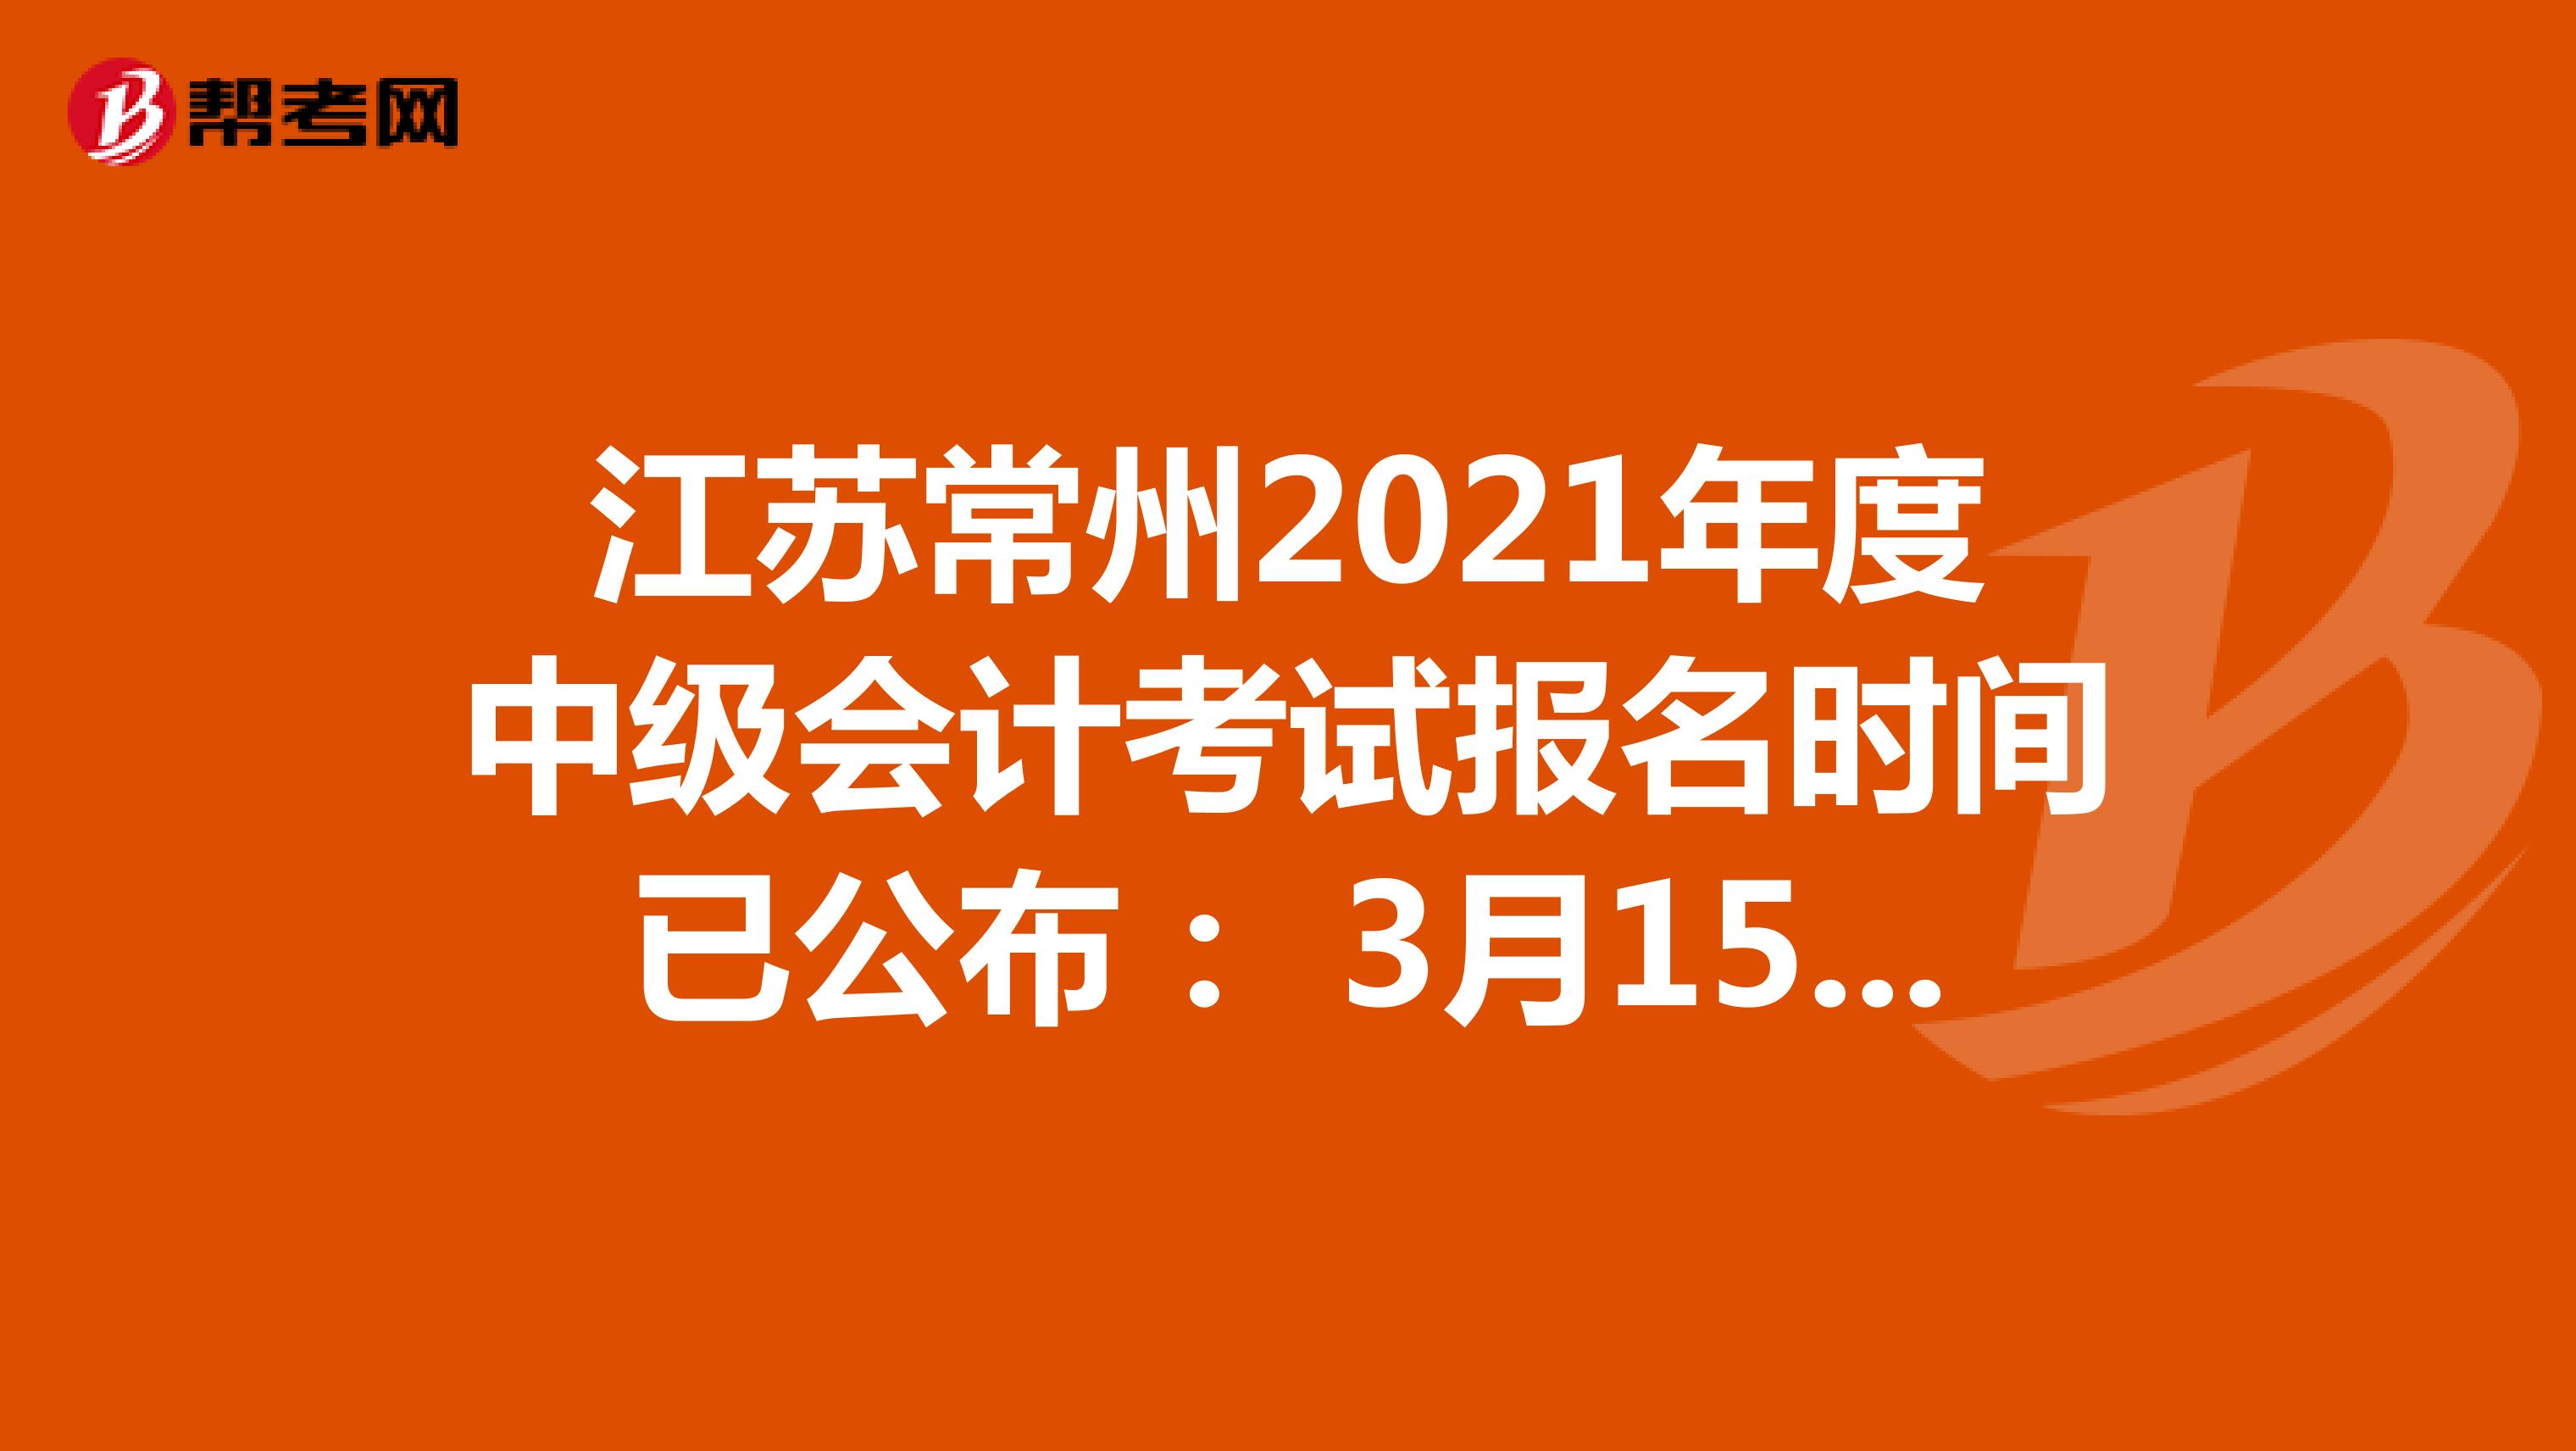 江苏常州2021年度中级会计考试报名时间已公布： 3月15日-31日